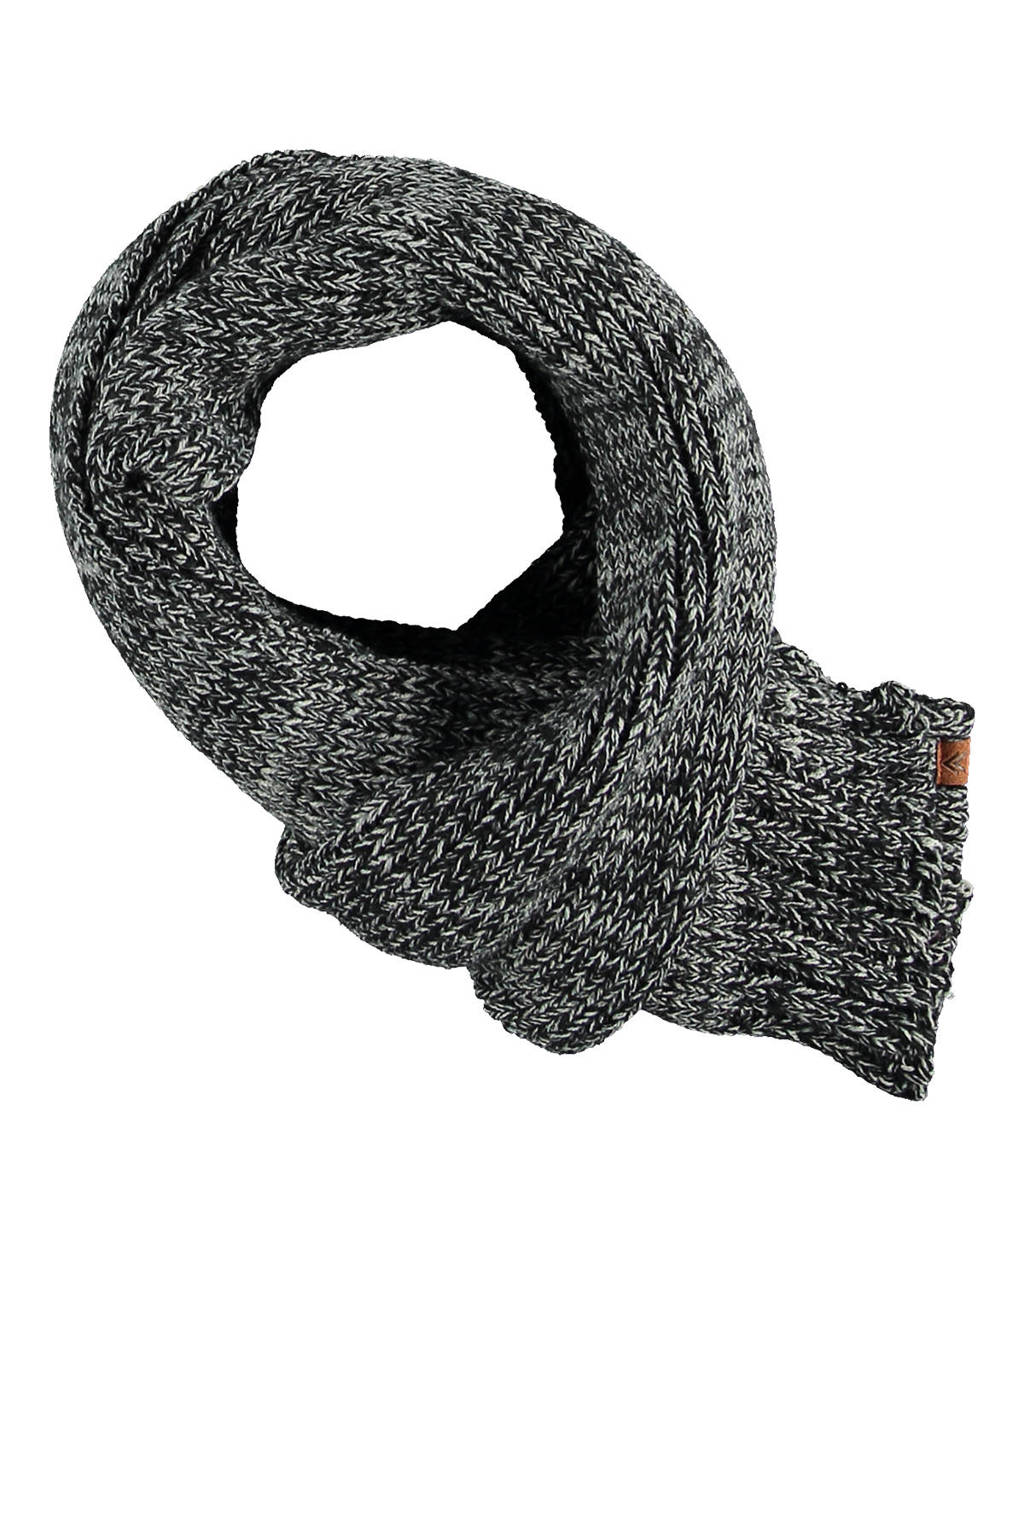 Sarlini sjaal zwart gemeleerd, zwart multi